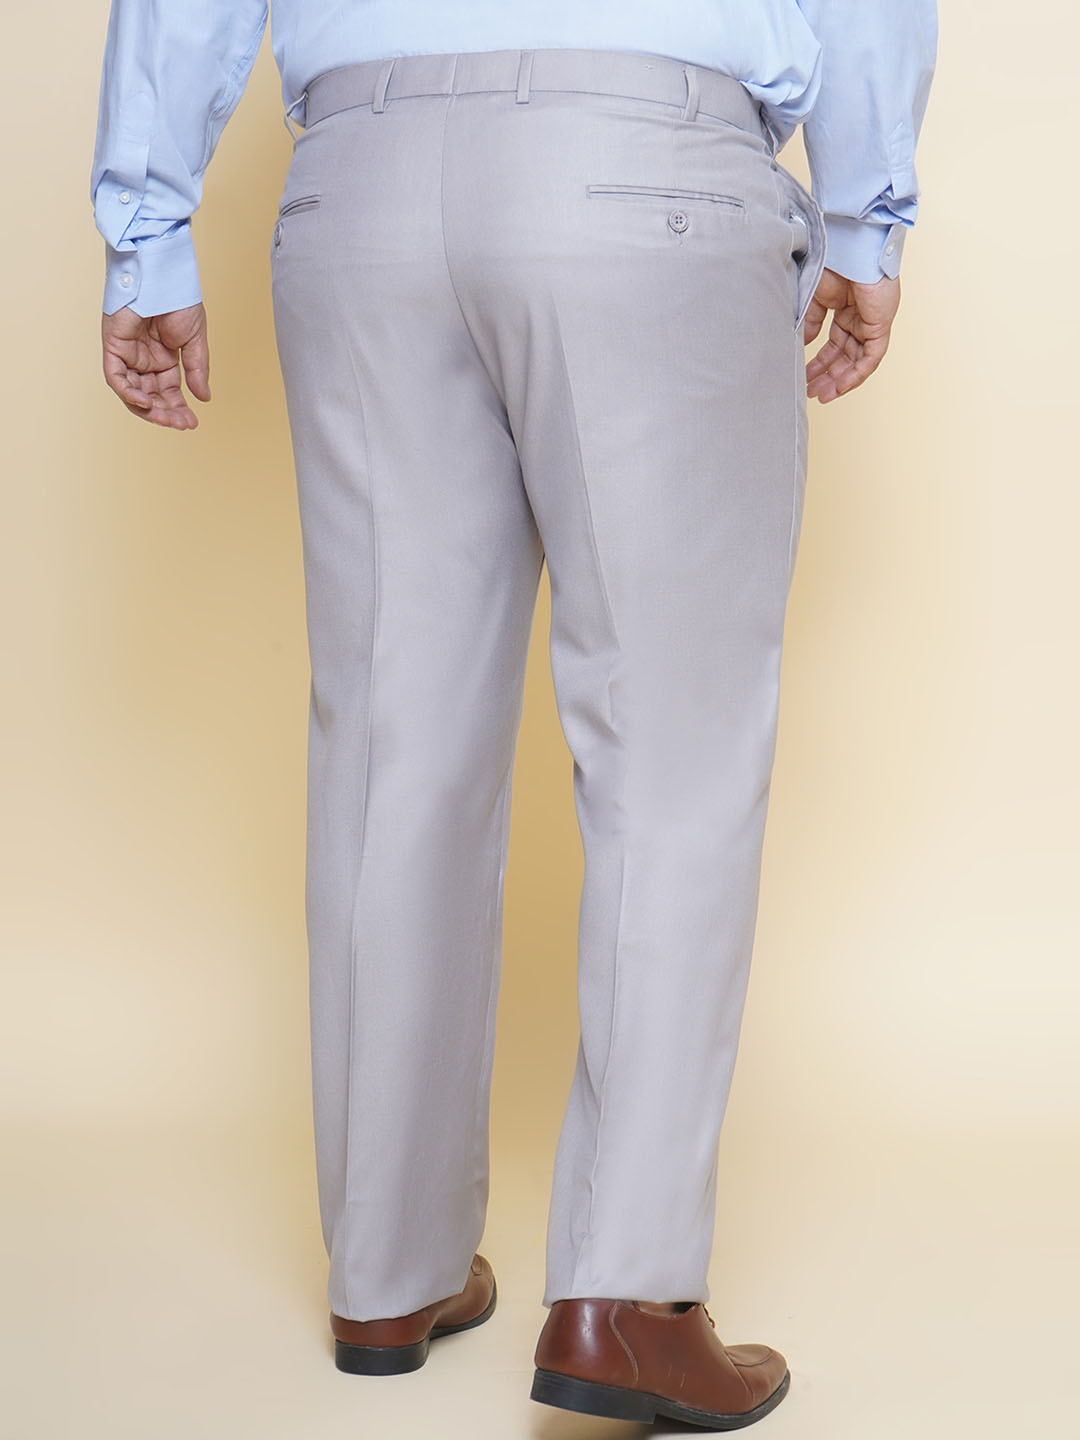 bottomwear/trousers/JPTR22010J/jptr22010j-5.jpg